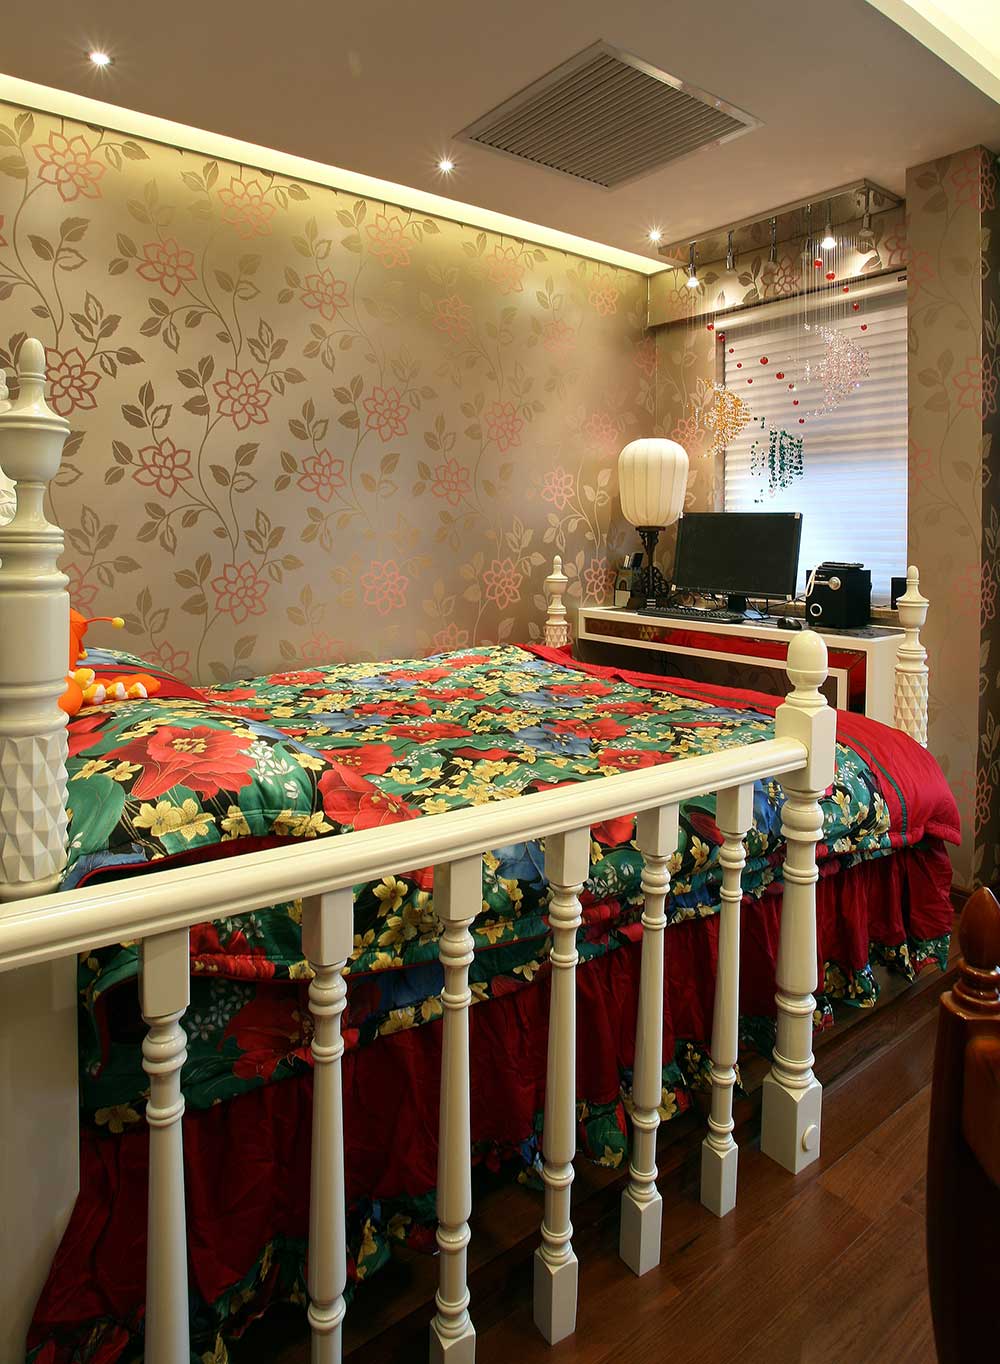 次卧布置的更加现代一些，大碎花的床单被套，白色的床边围栏，细线勾勒红花的墙纸，充满了风韵。